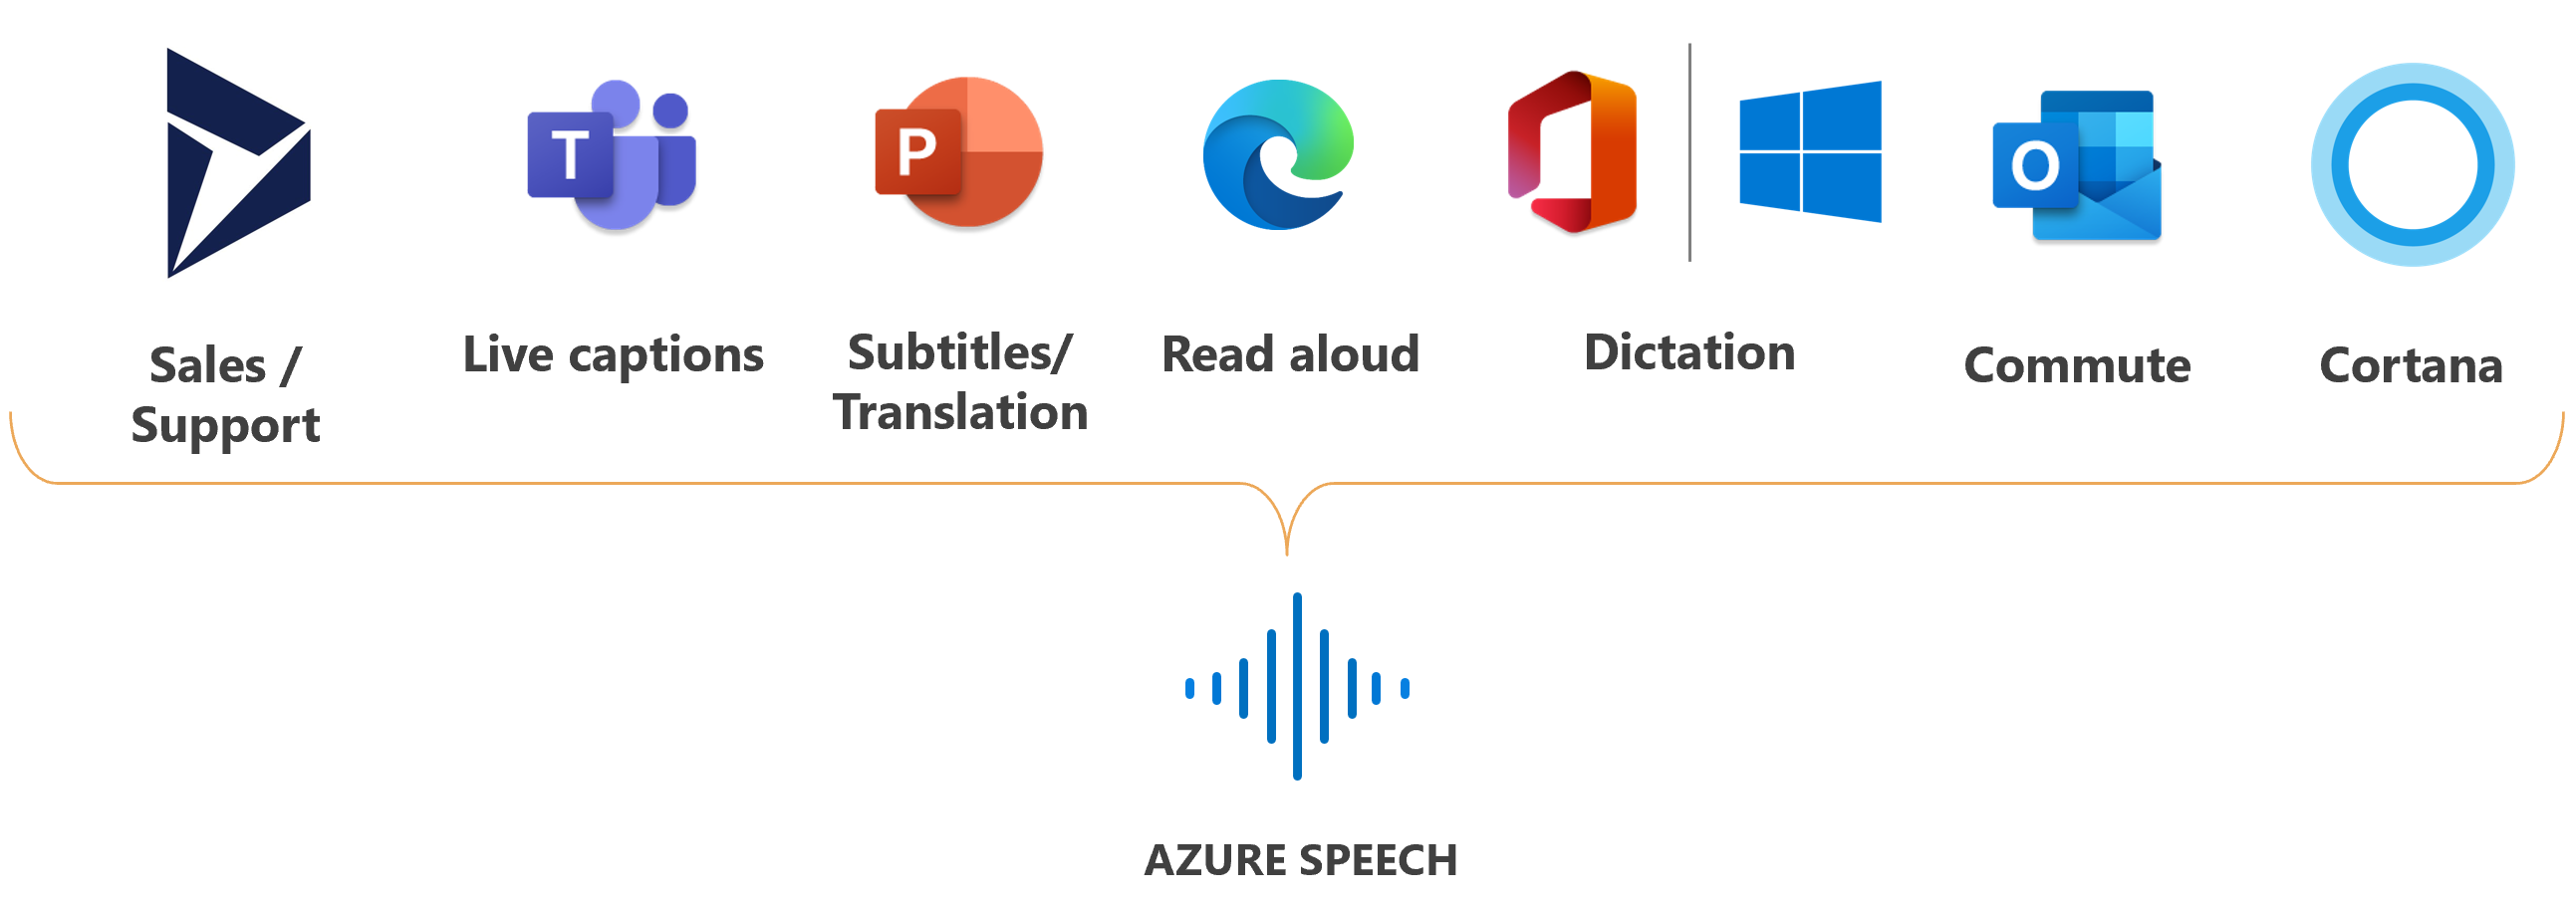 音声サービスが利用されている Microsoft 製品のロゴを表示した画像。